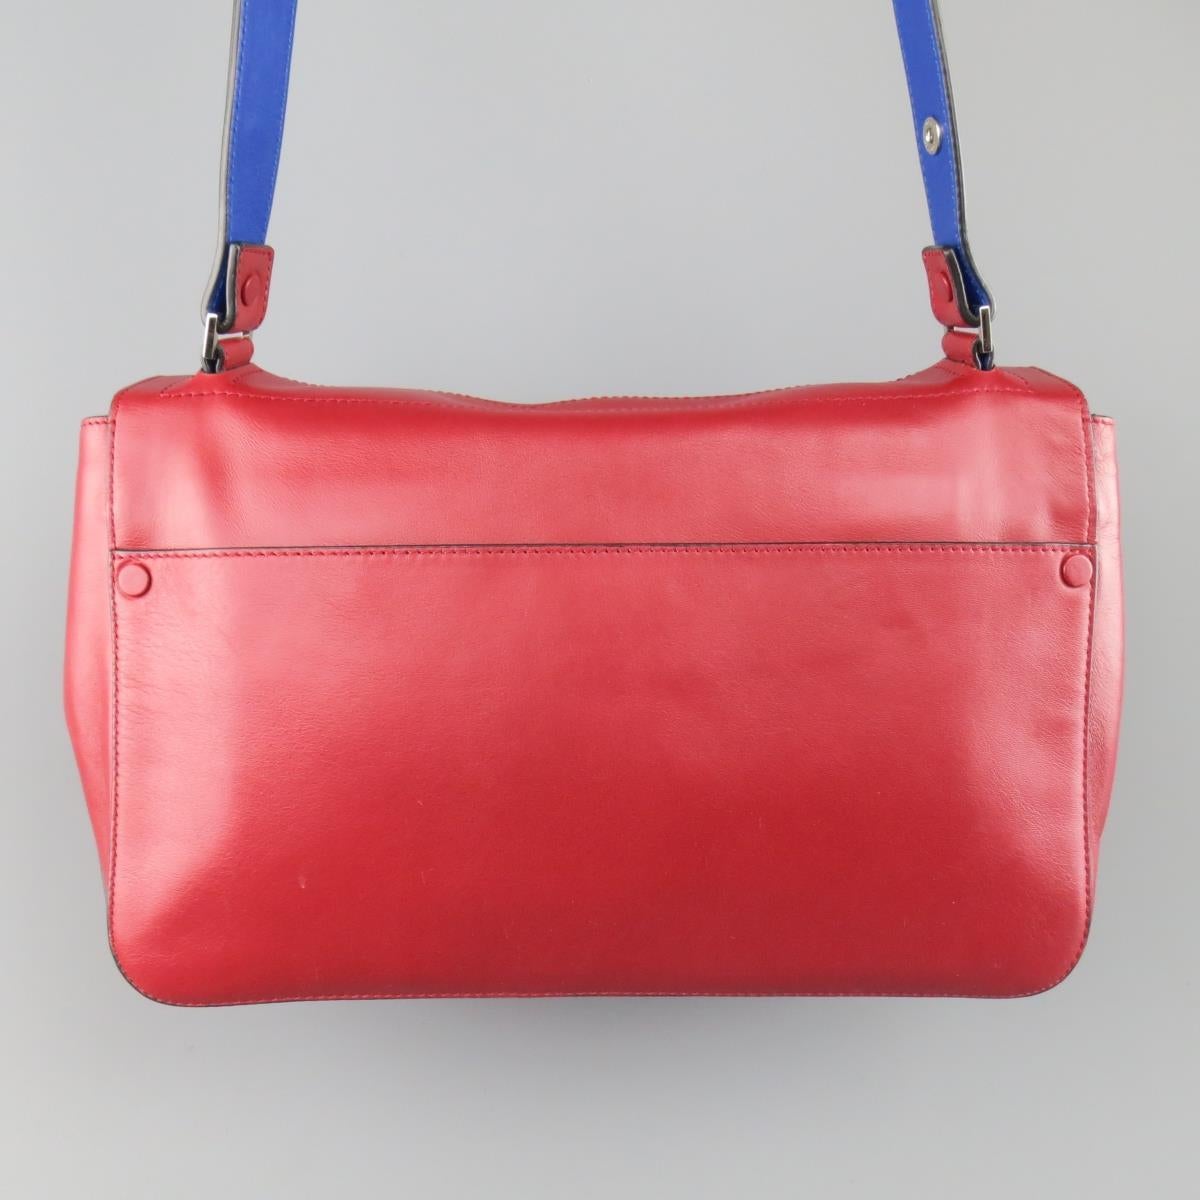 PROENZA SCHOULER Red & Blue Color Block Leather Shoulder Bag For Sale 3